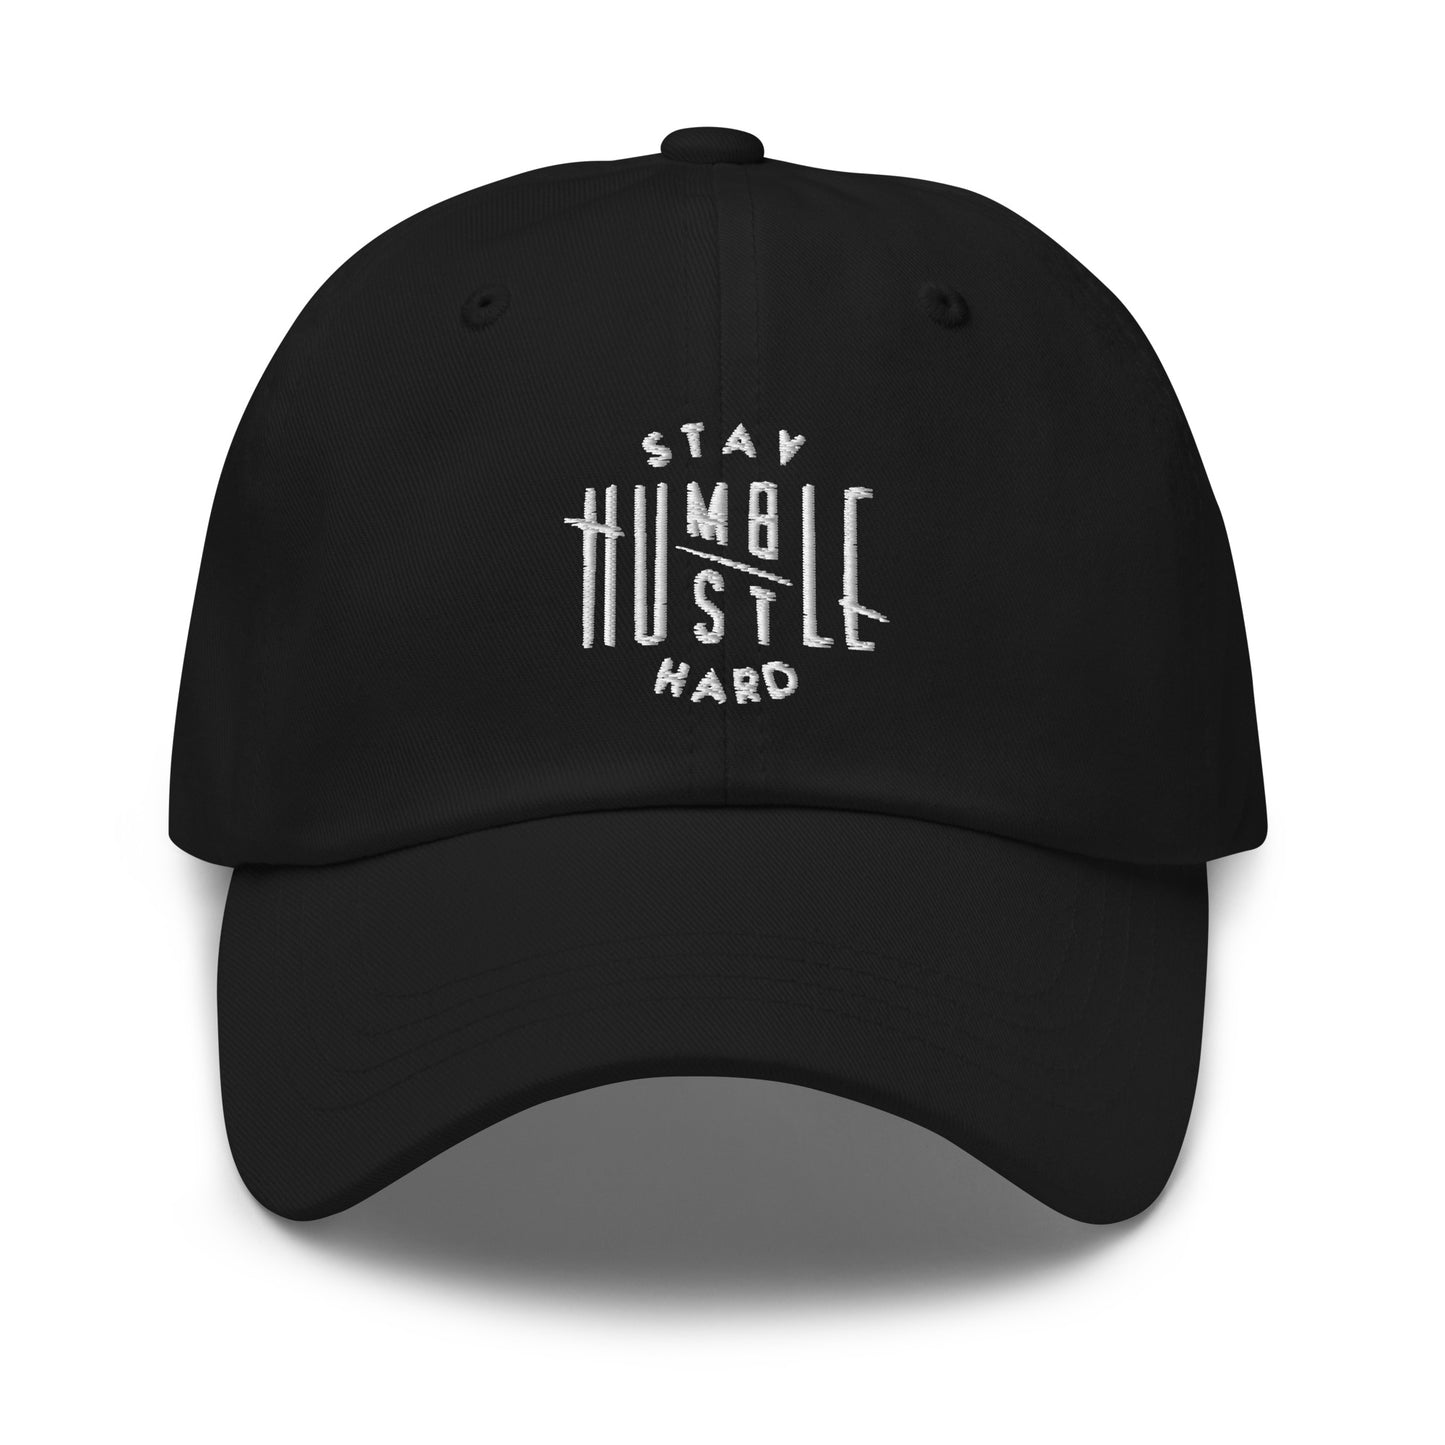 Hustle Hard Dad hat